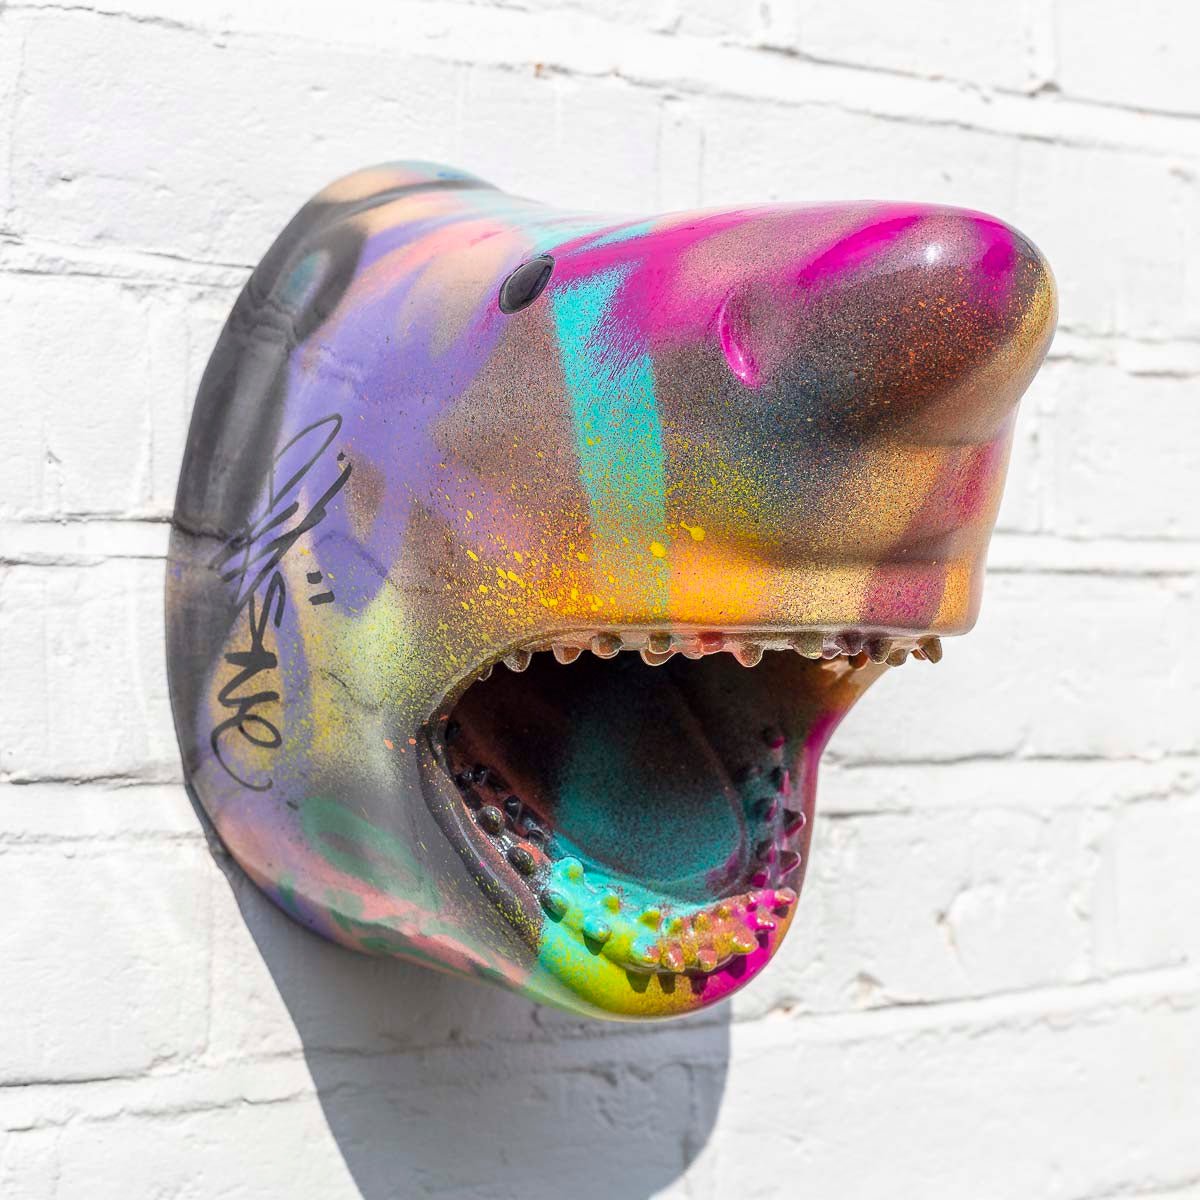 Small Shark Head III - Original Sculpture Jeremy Olsen Original Sculpture